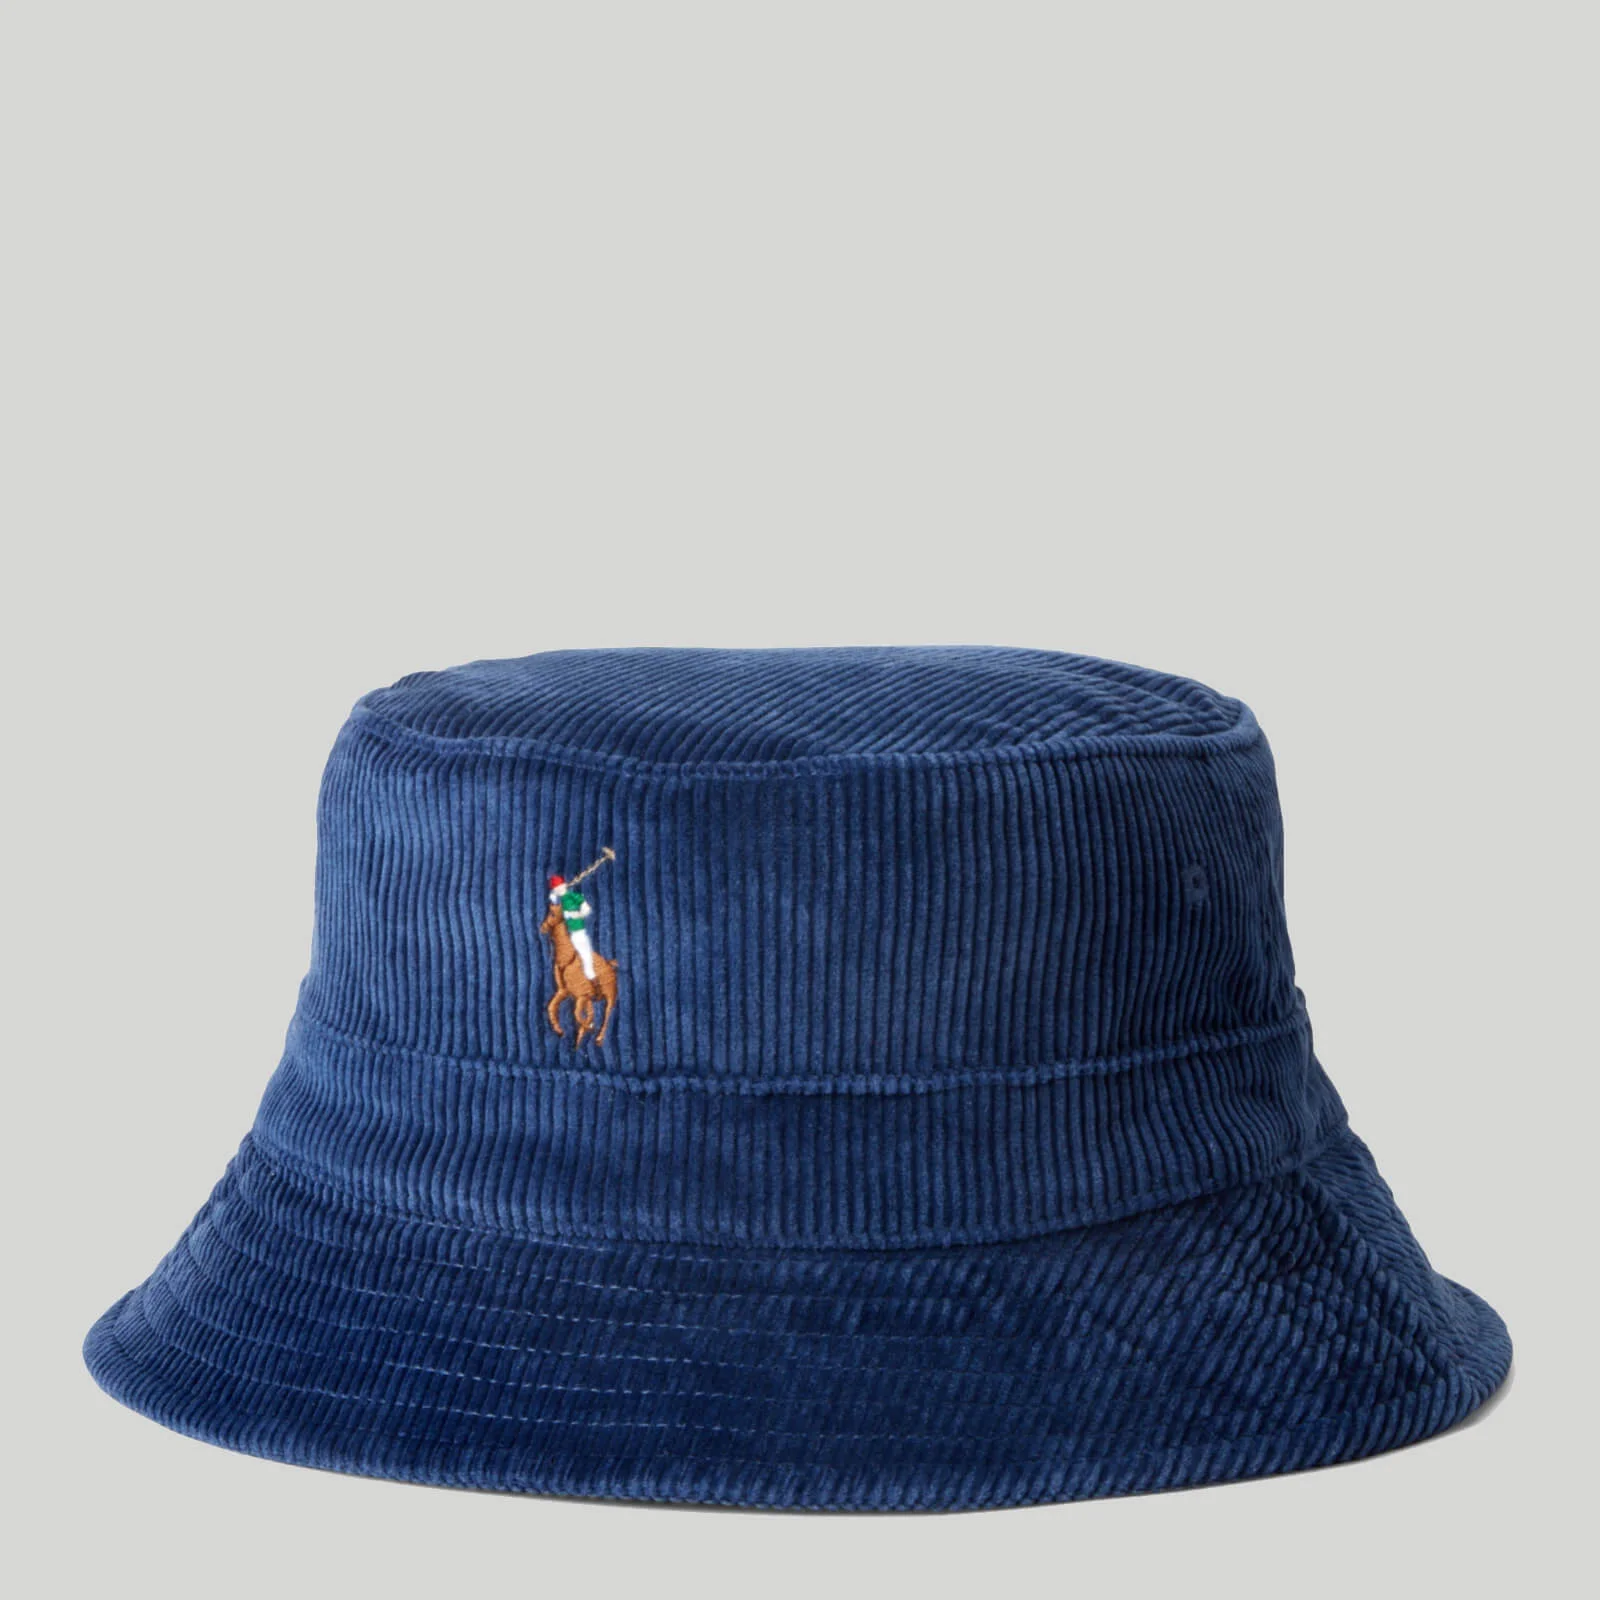 Polo Ralph Lauren Men's Loft Bucket Hat - Hunter Navy Image 1